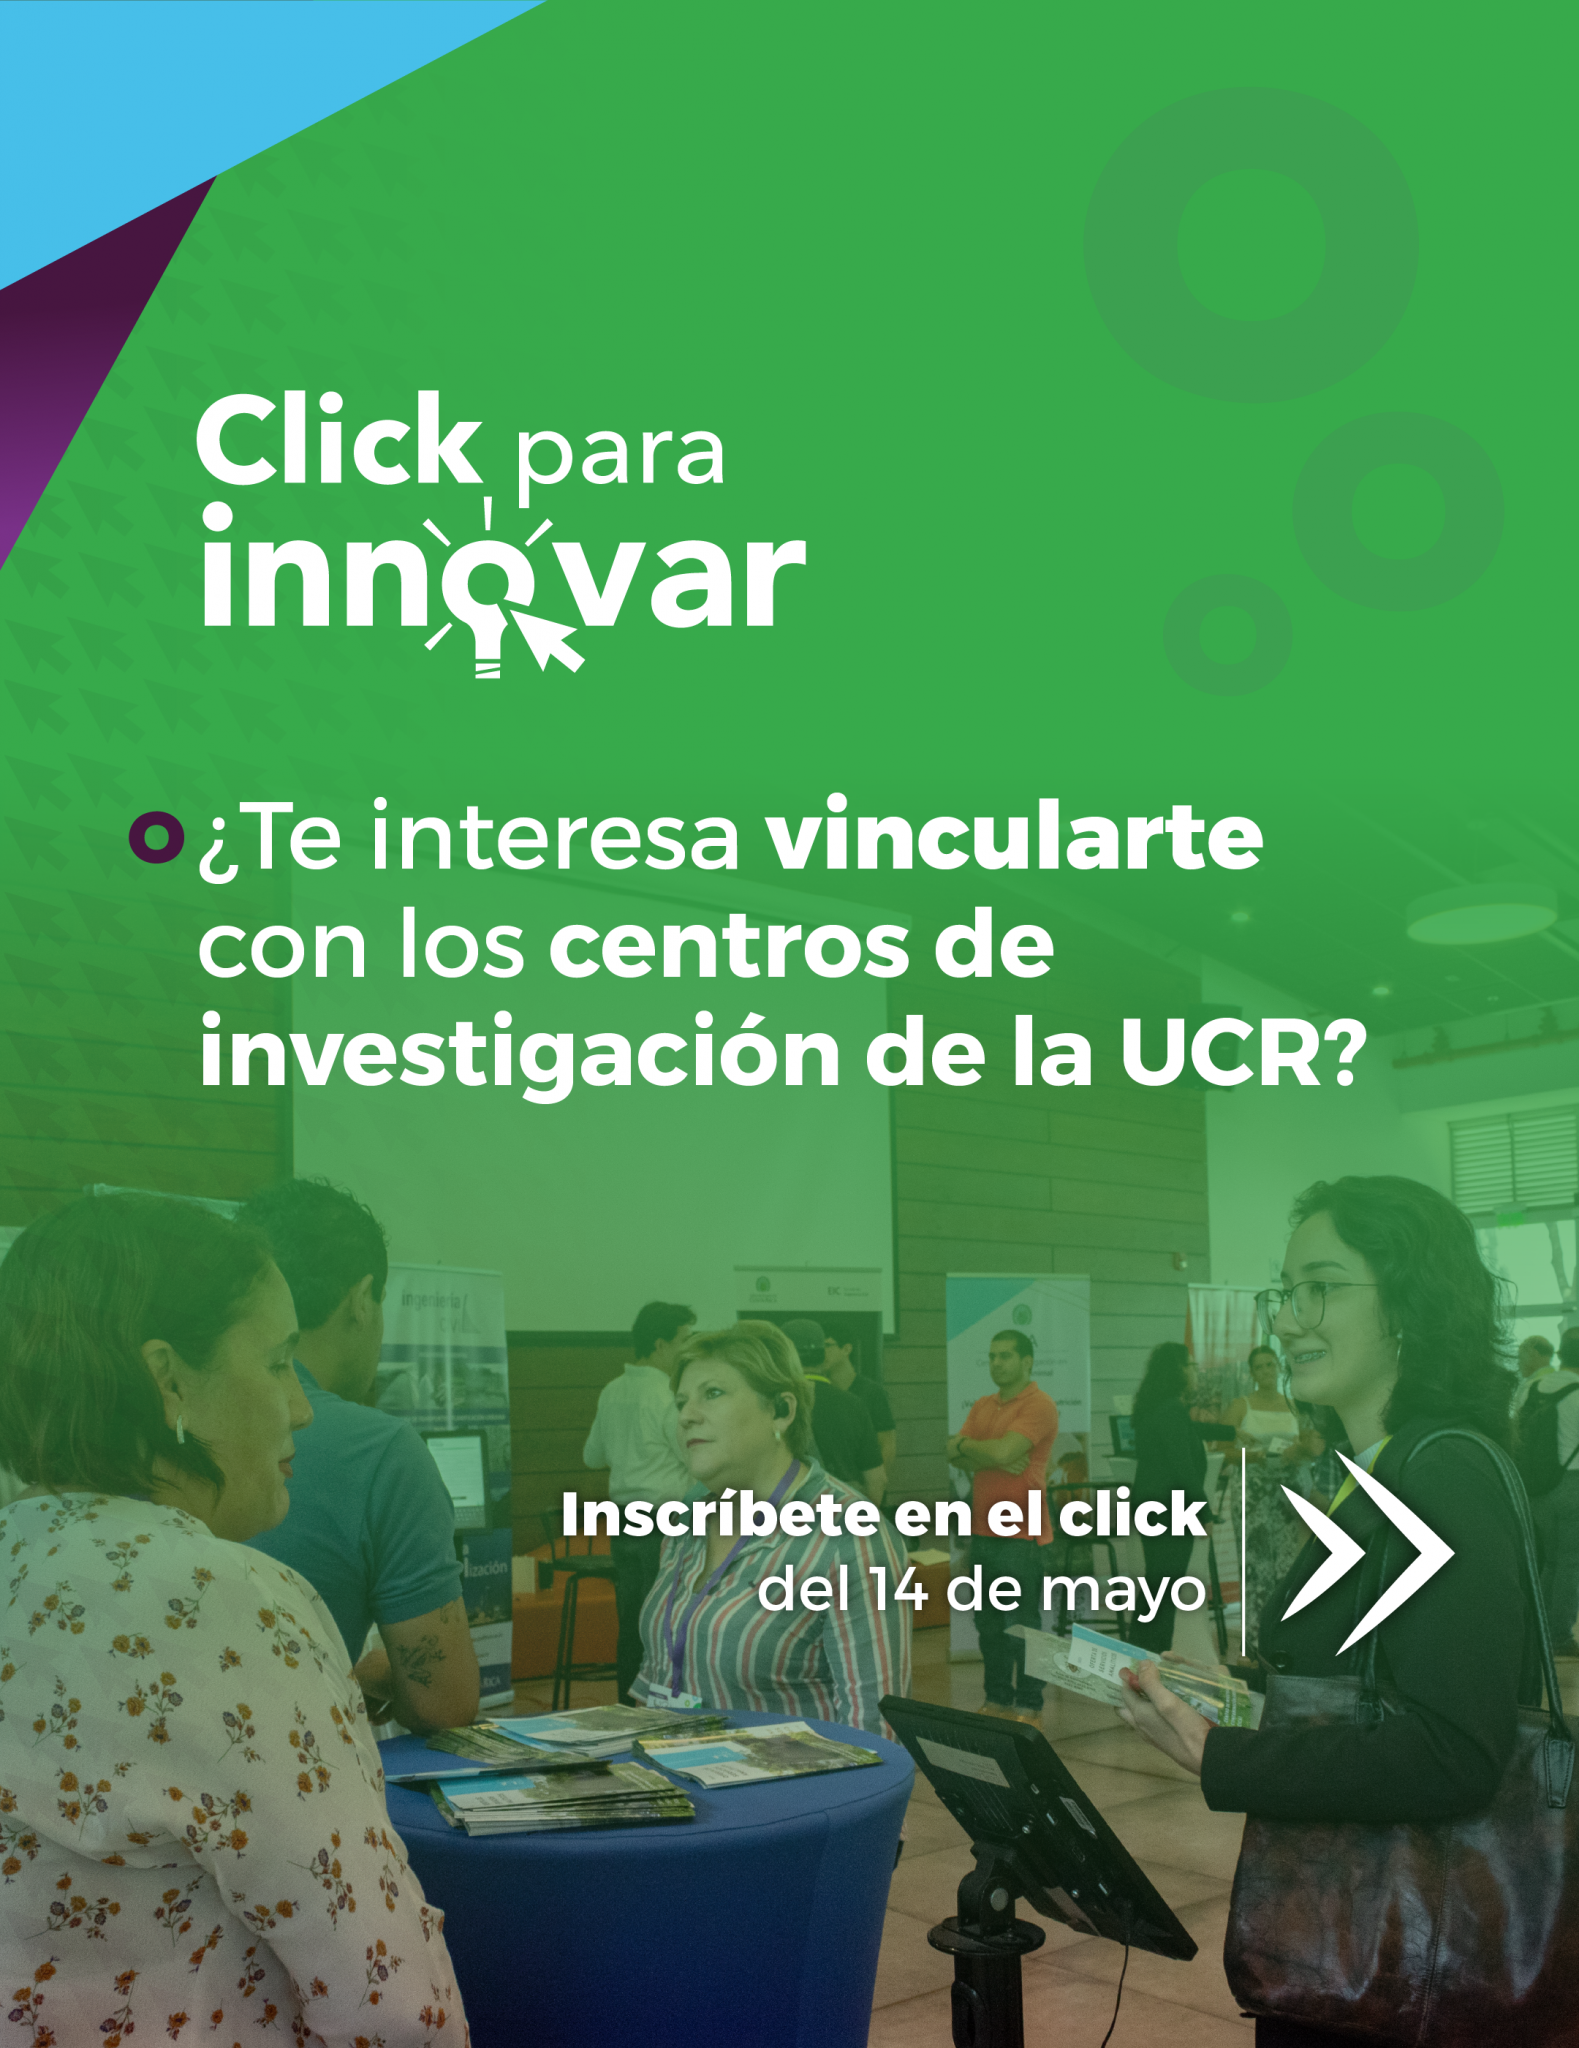 Click para innovar: ¿Te interesa vincularte con los centros de investigación de la UCR?